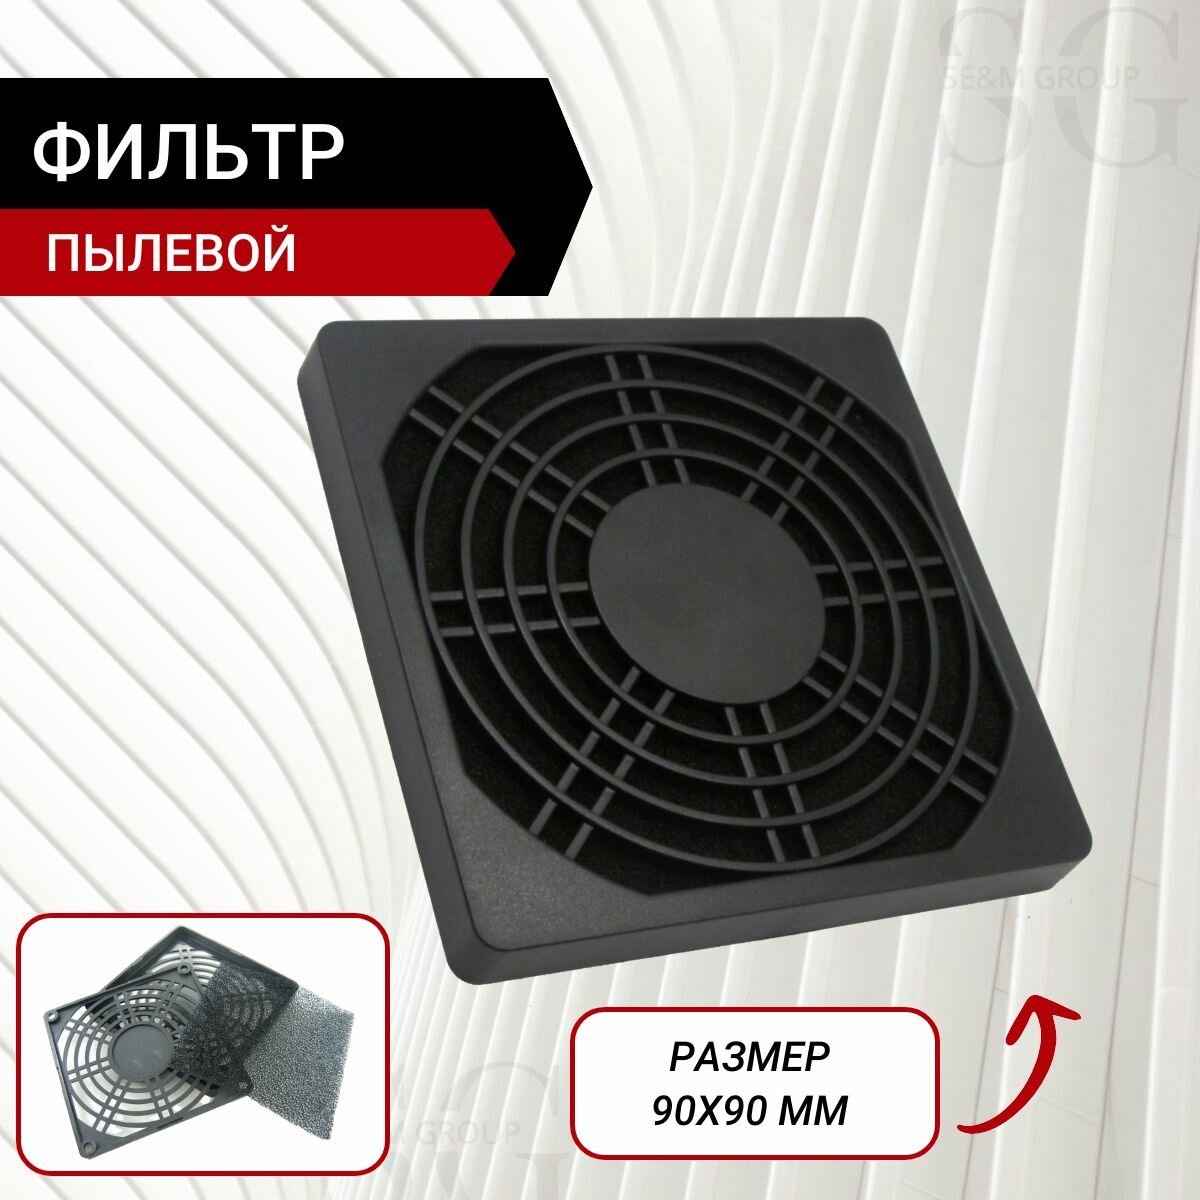 Пылевой фильтр для вентилятора 90х90 мм 5 шт